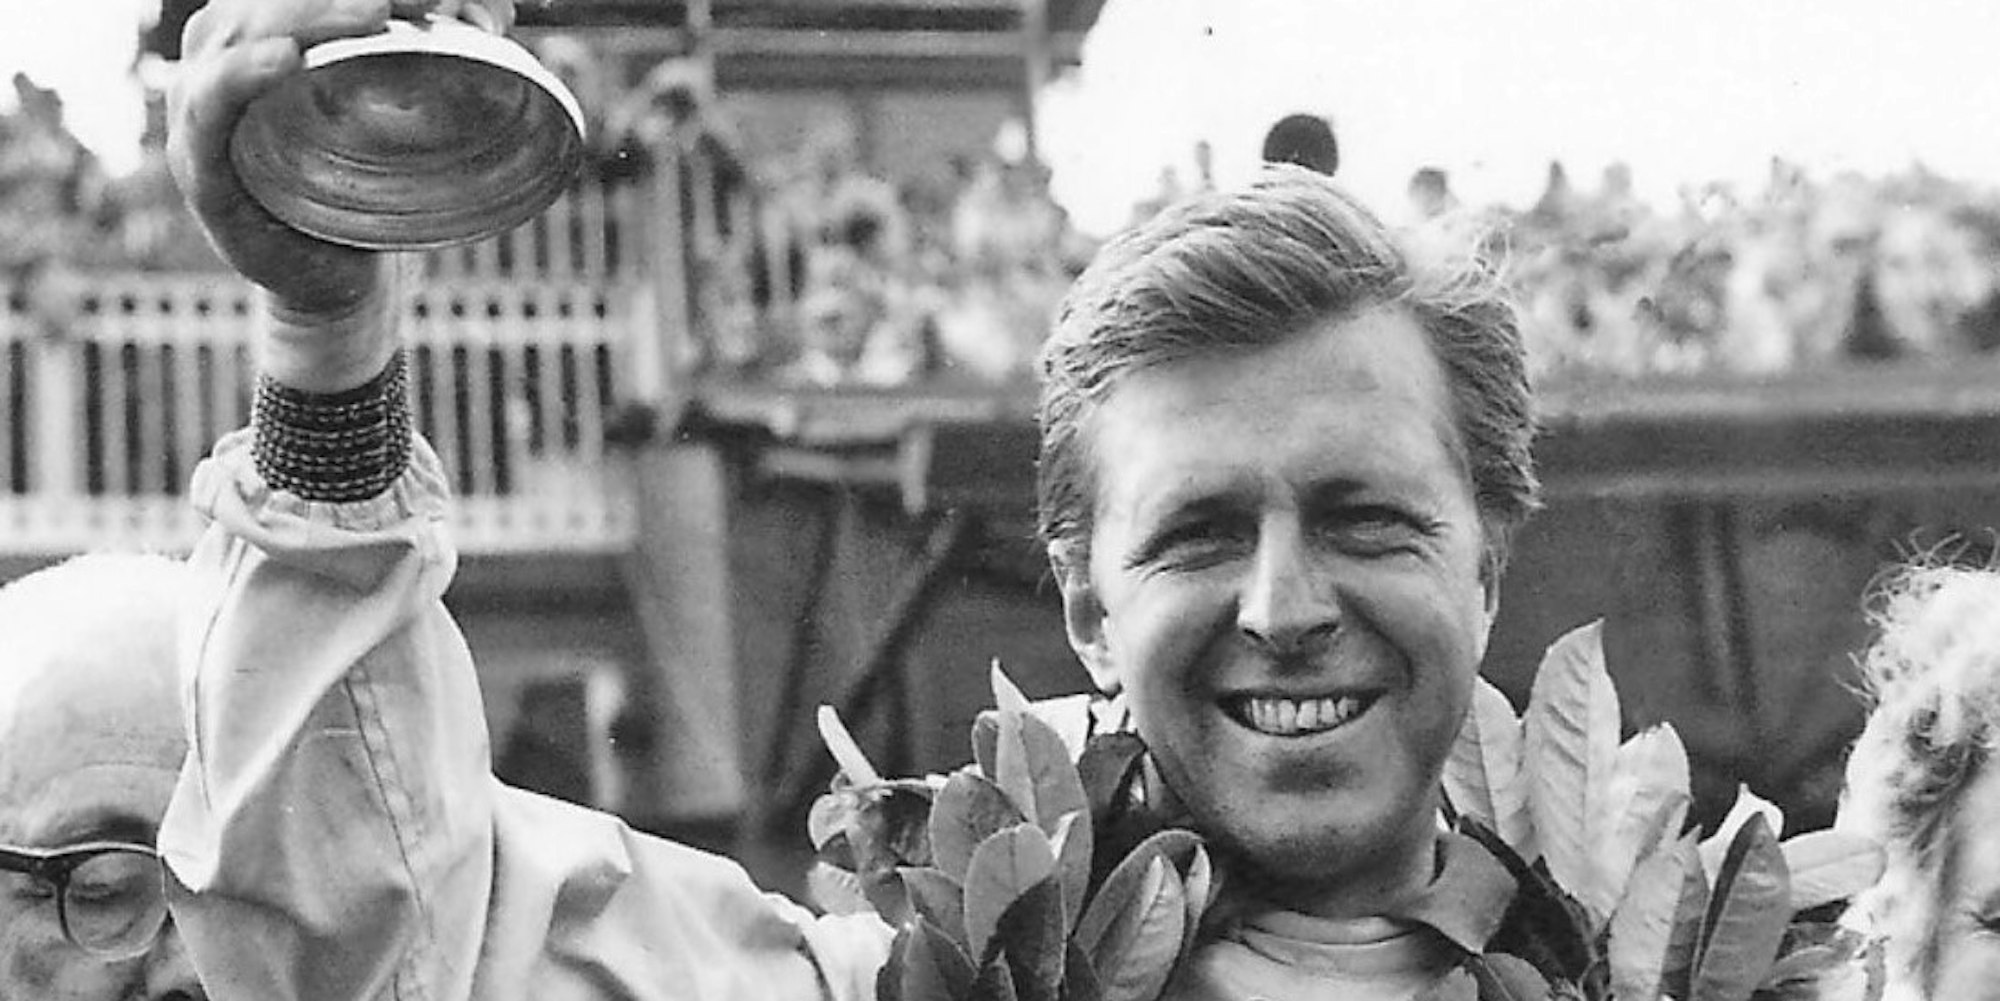 Wolfgang Graf Berghe von Trips bei der Siegerehrung nach dem Großen Preis von England 1961 in Aintree.